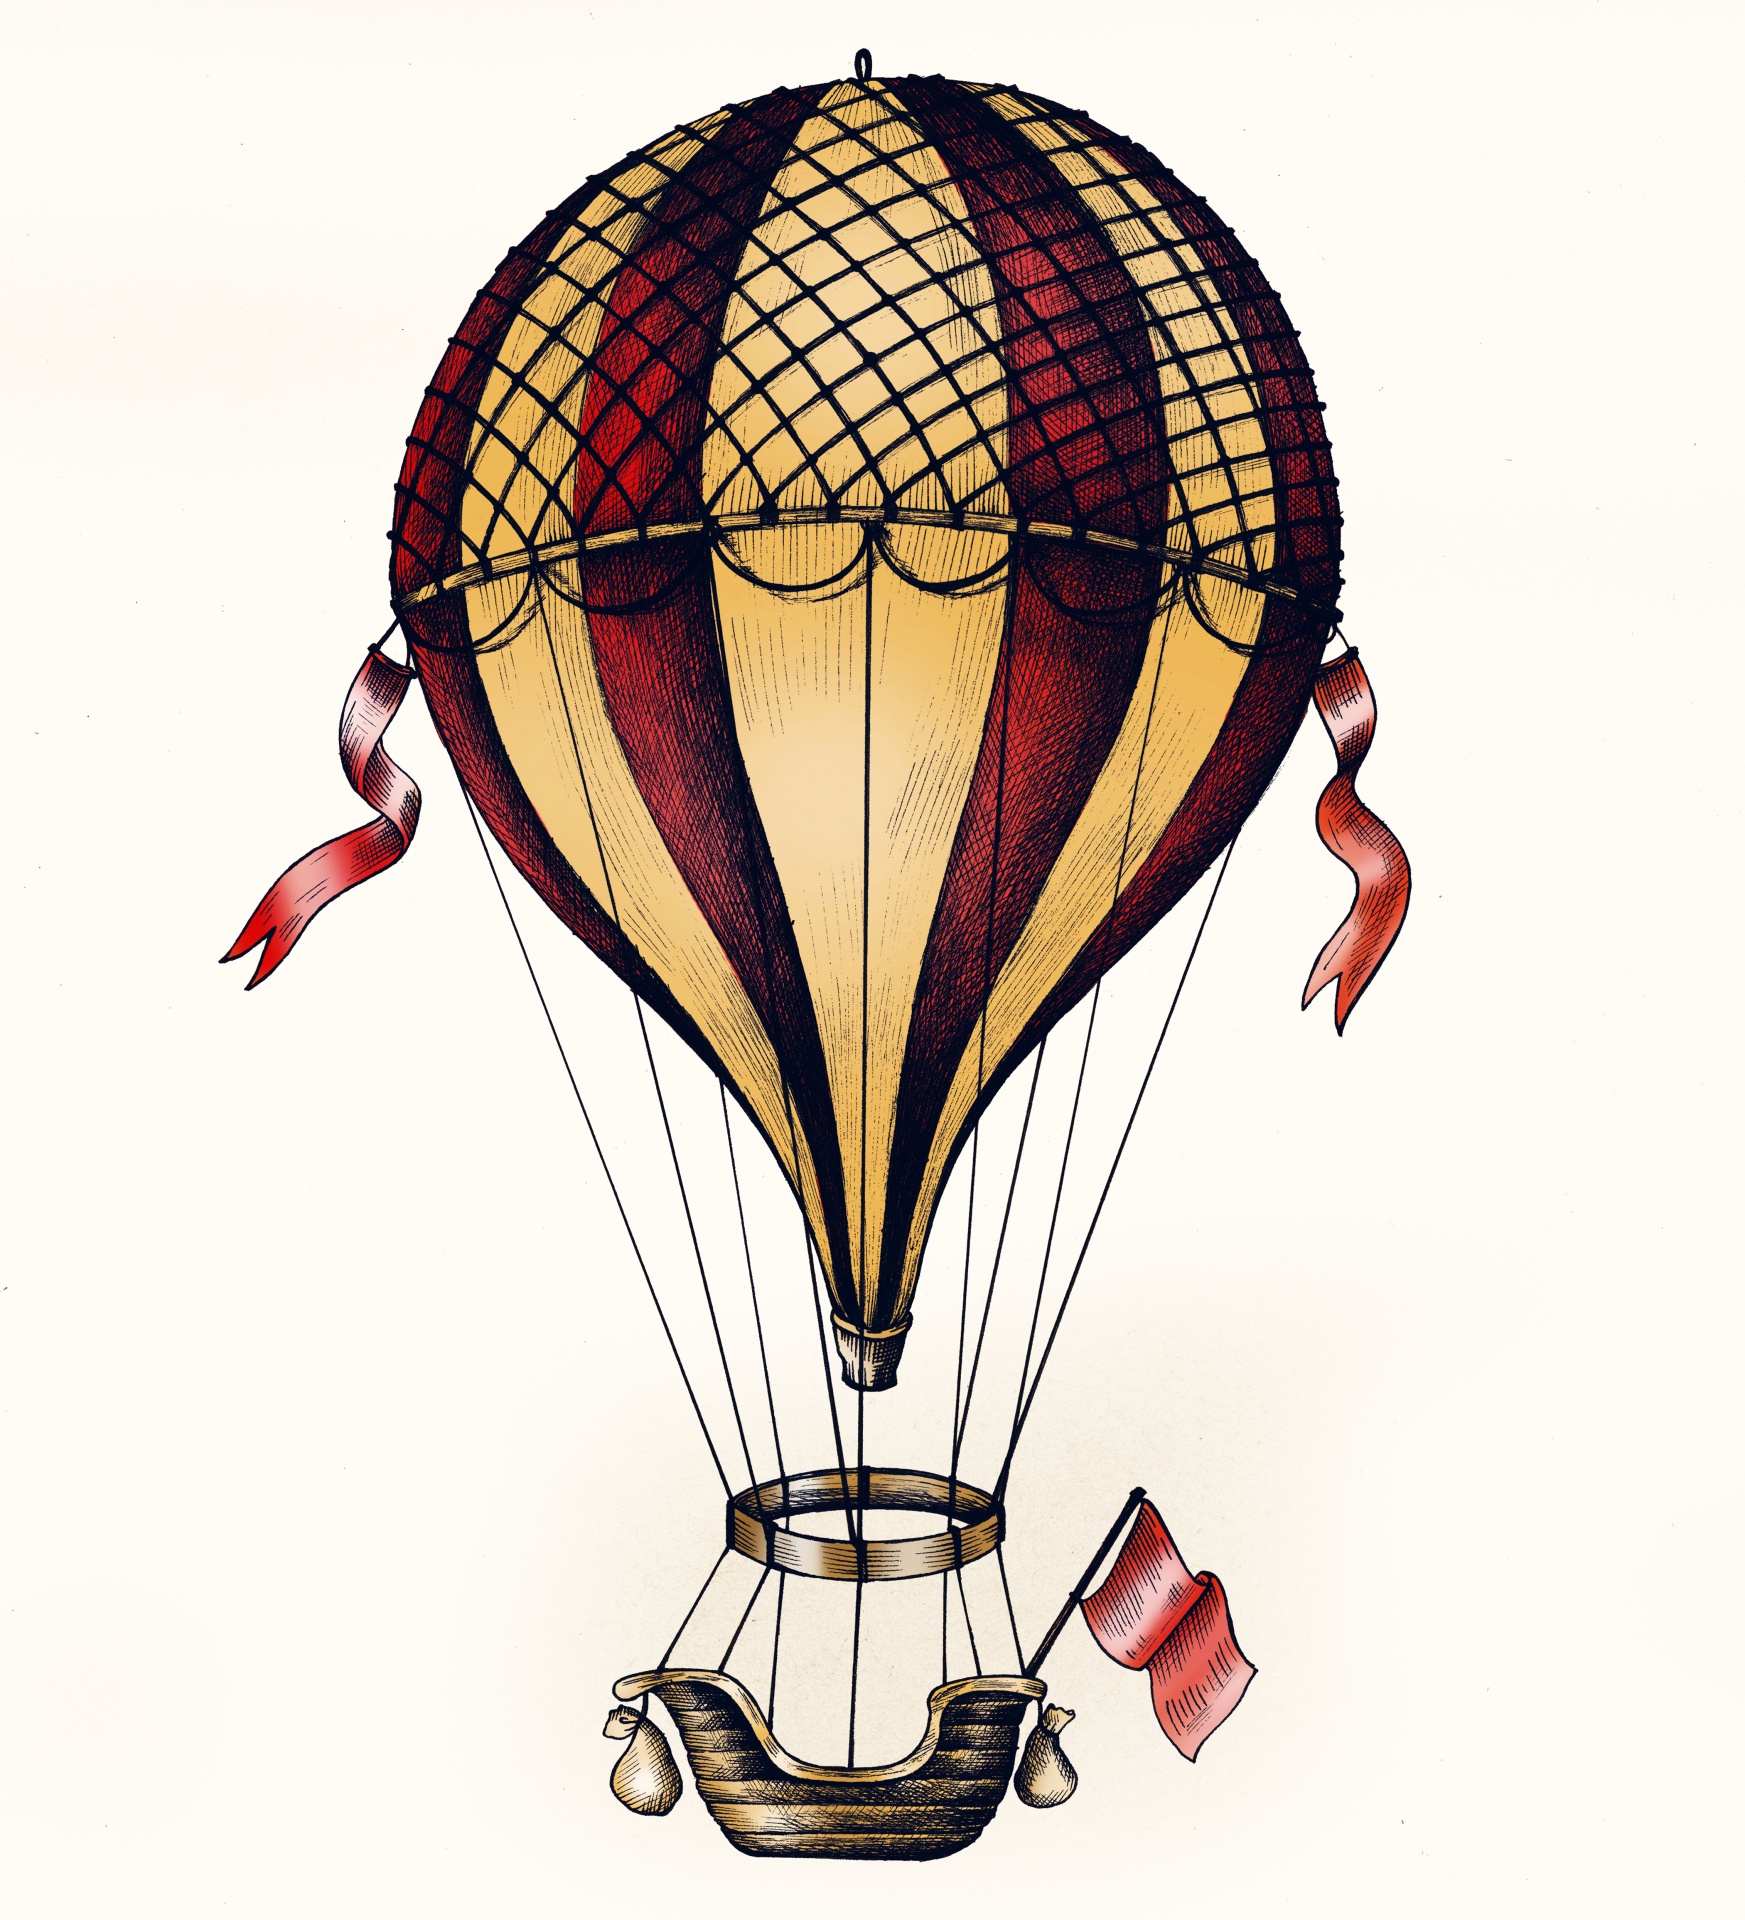 Aviação voadora em balão de ar quente